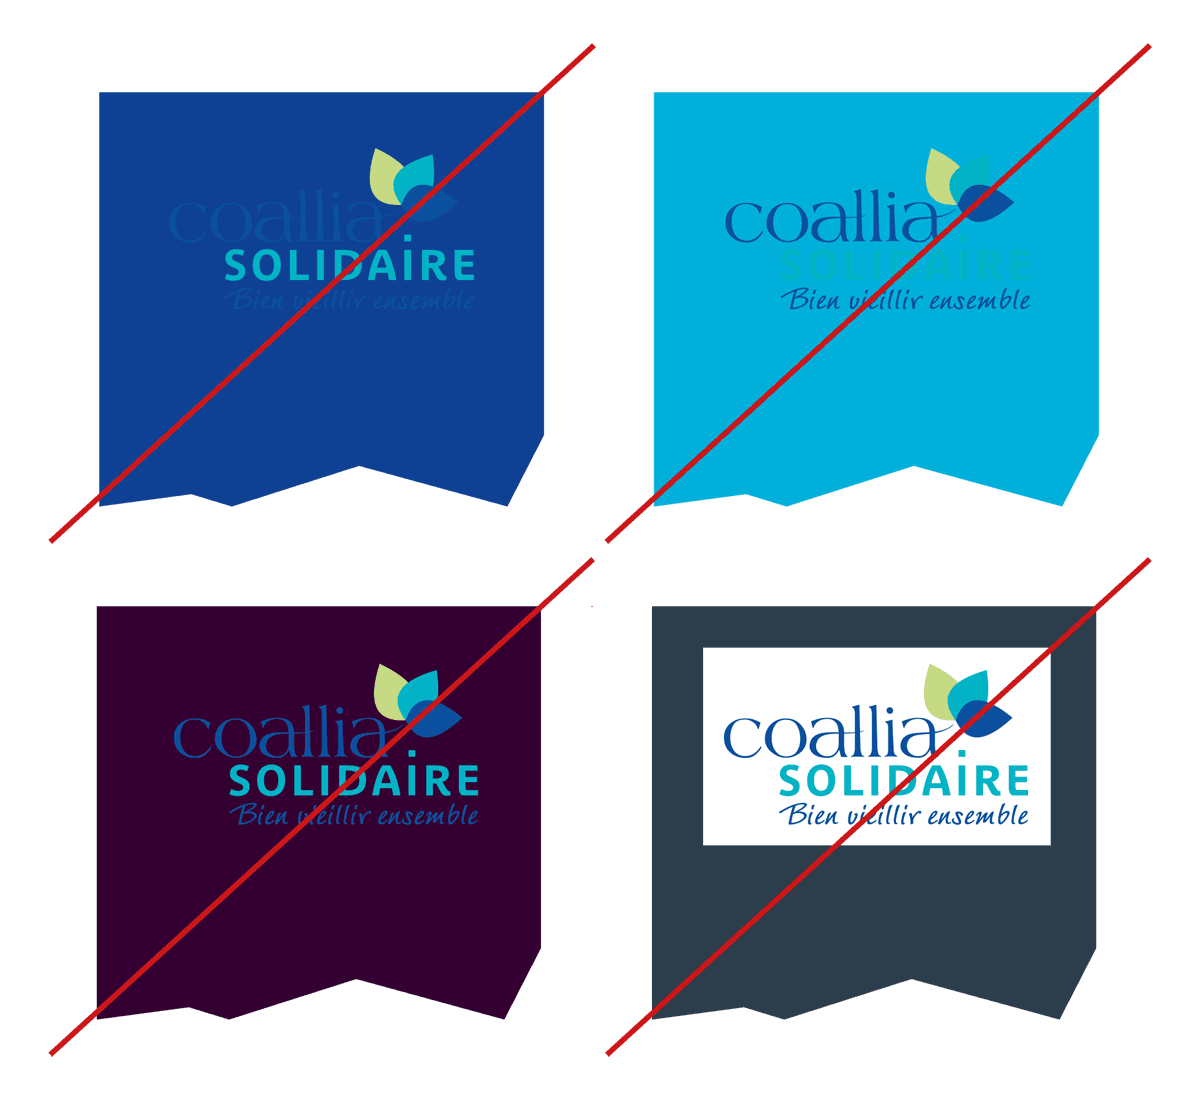 Identité visuelle légère créée pour Coallia Solidaire par Caramel & Paprika - Extrait de la charte graphique, fonds de couleur interdits